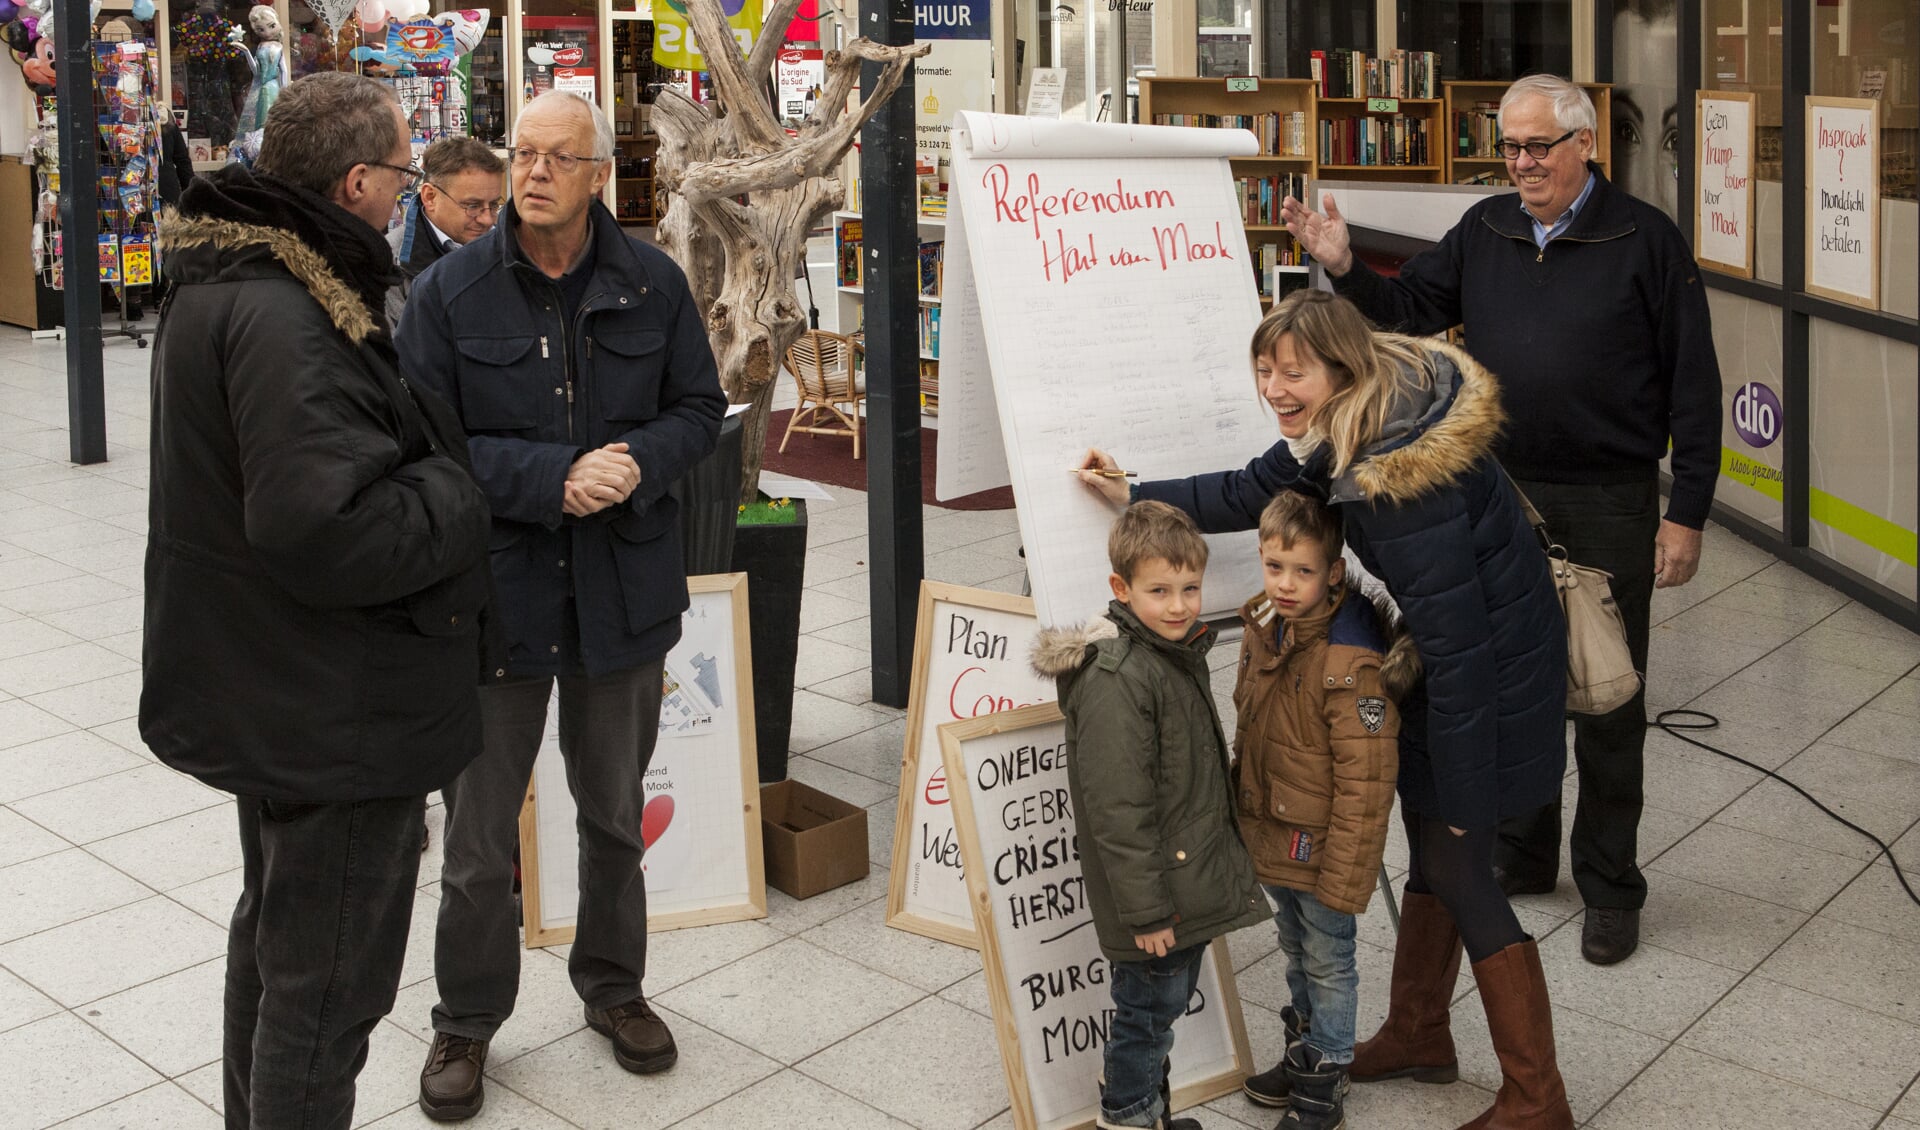 Protestactie tegen de plannen 'Hart van Mook'. Geheel rechts: Stan Brinkhoff. (foto: Diana Derks)